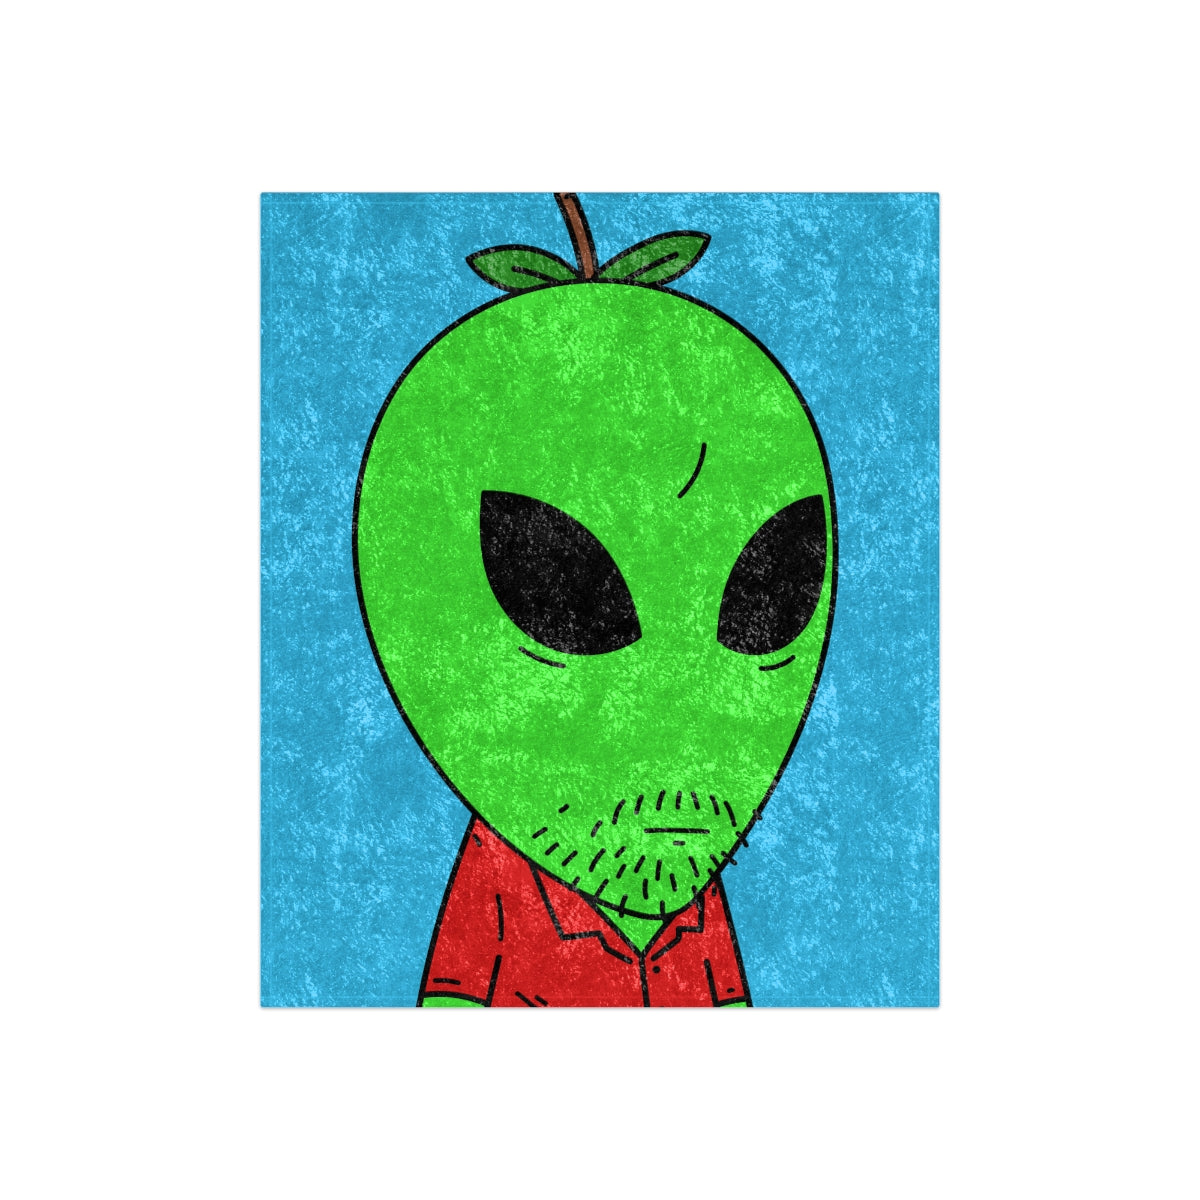 Green Apple Head Alien Unshaven Red Collar Shirt Visitor Crushed Velvet Blanket